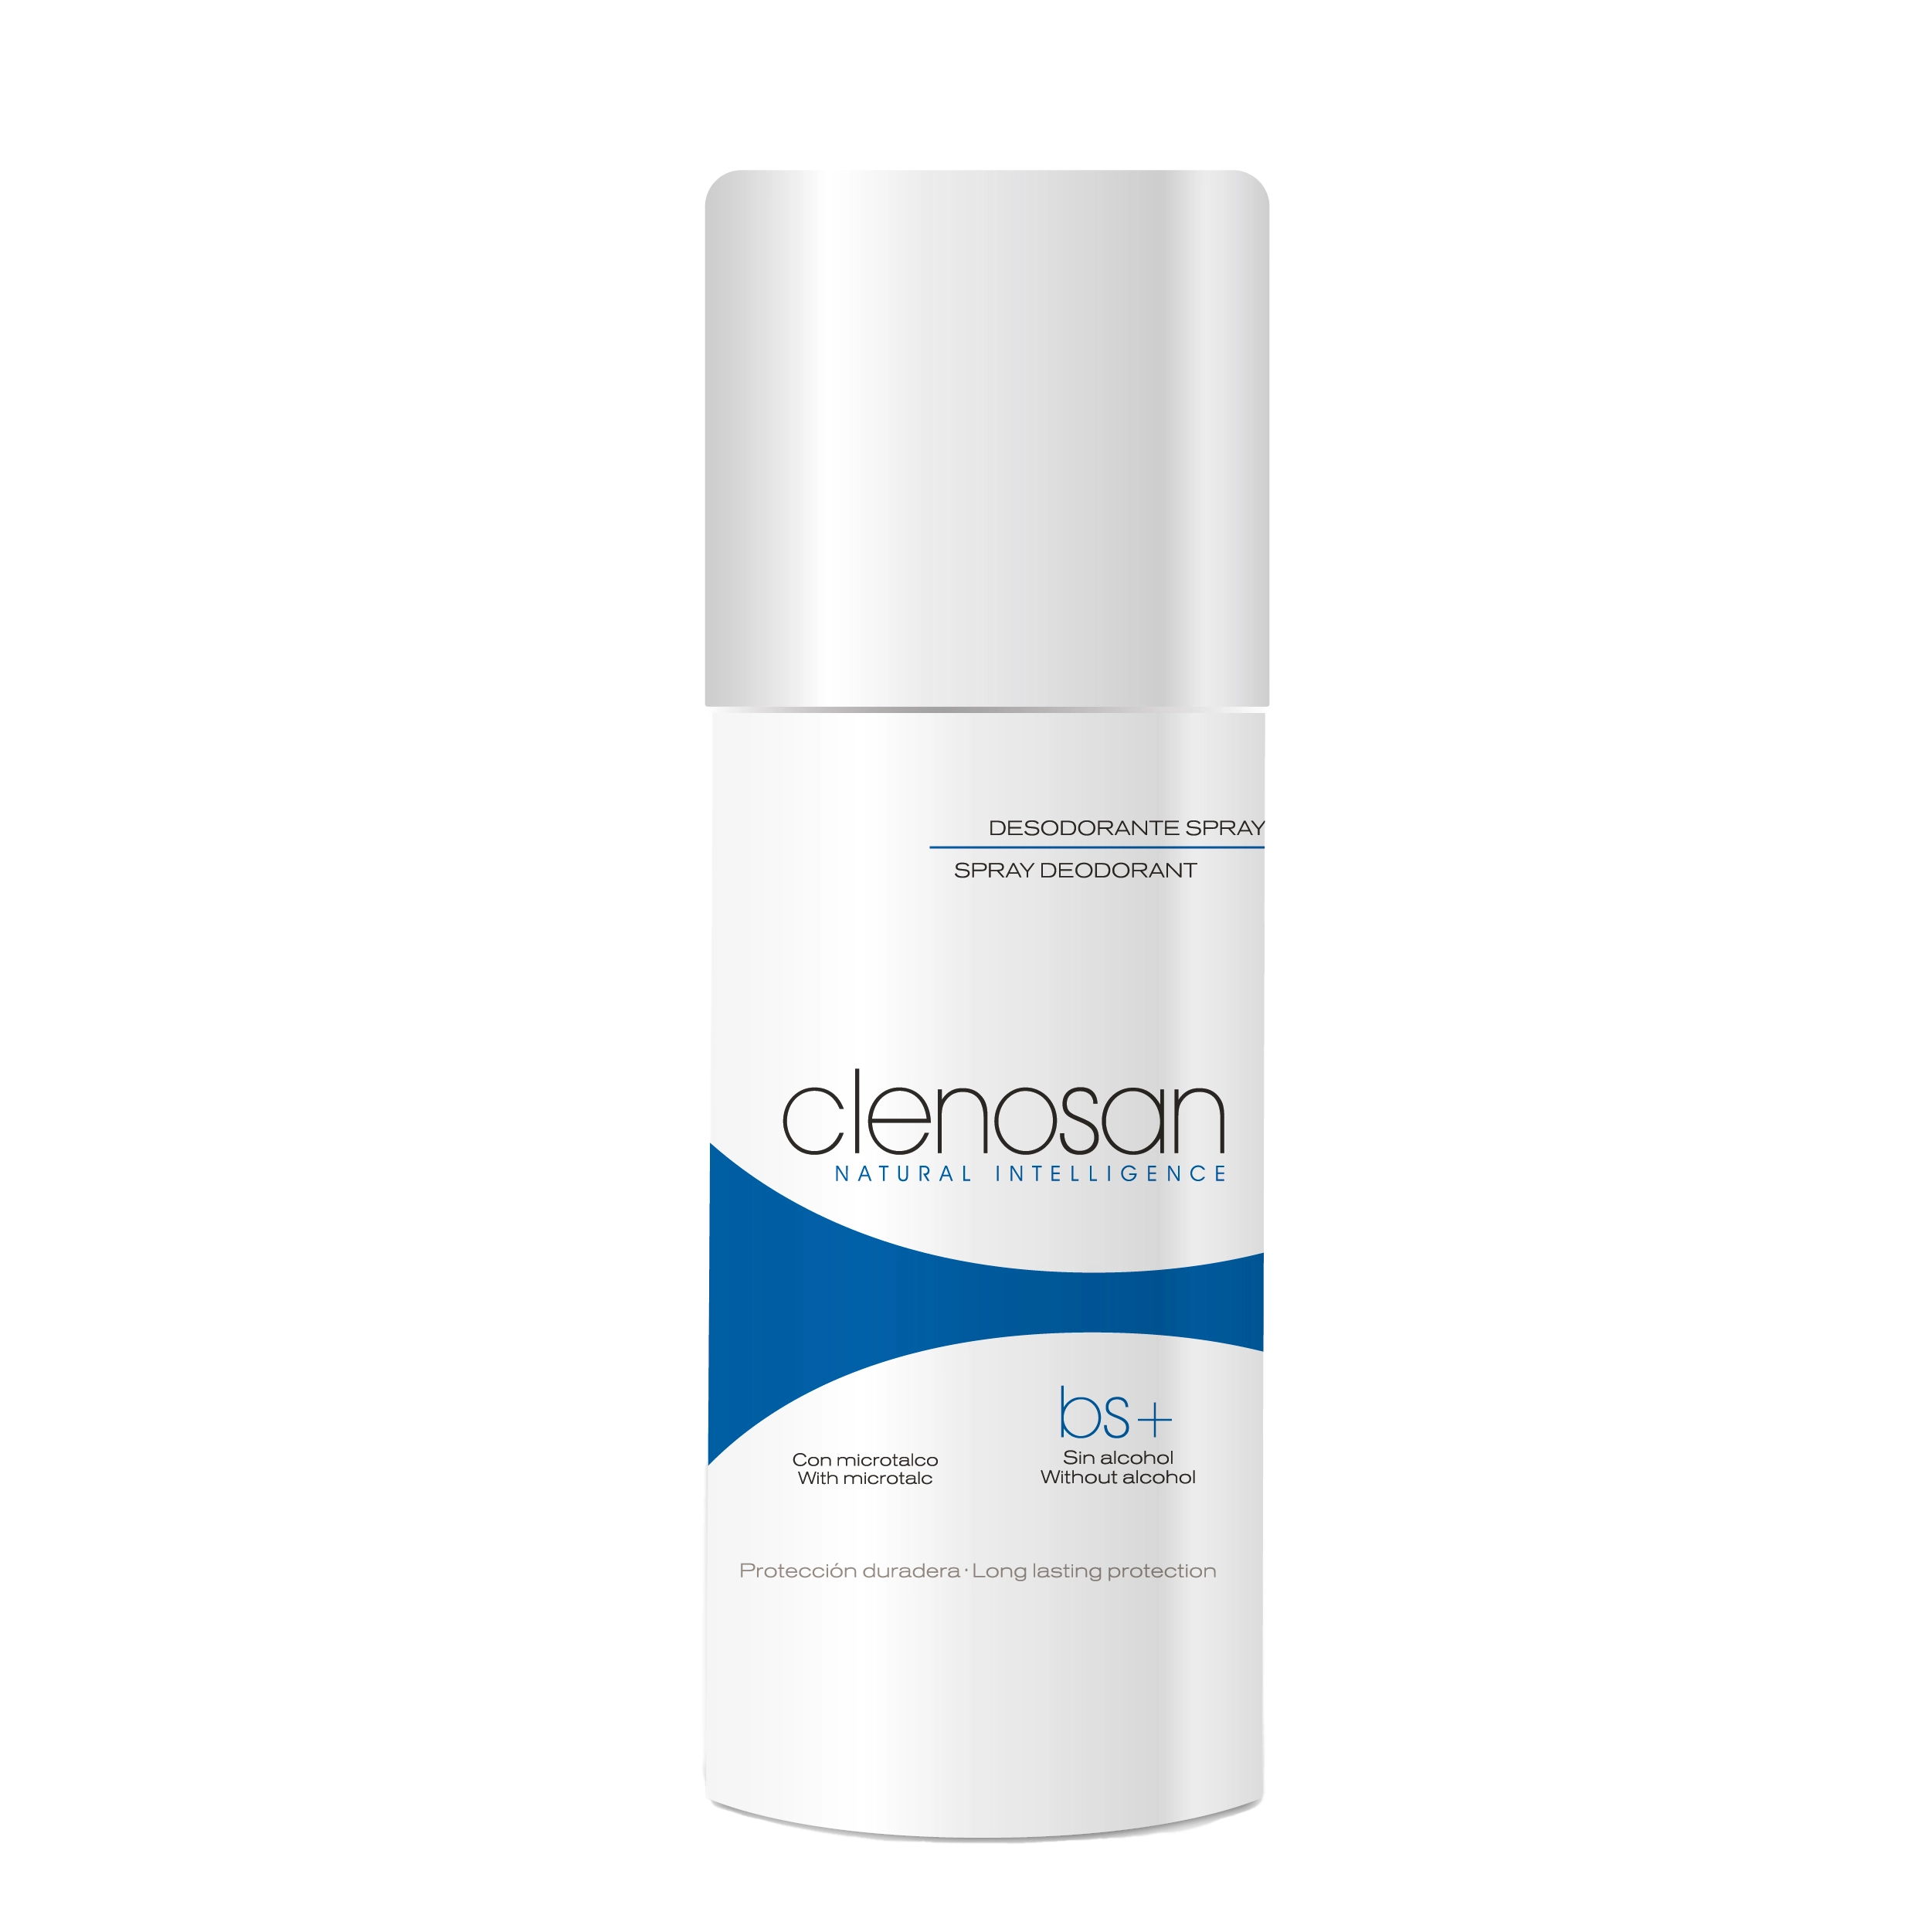 Desodorante en Spray con Microtalco de Clenosan